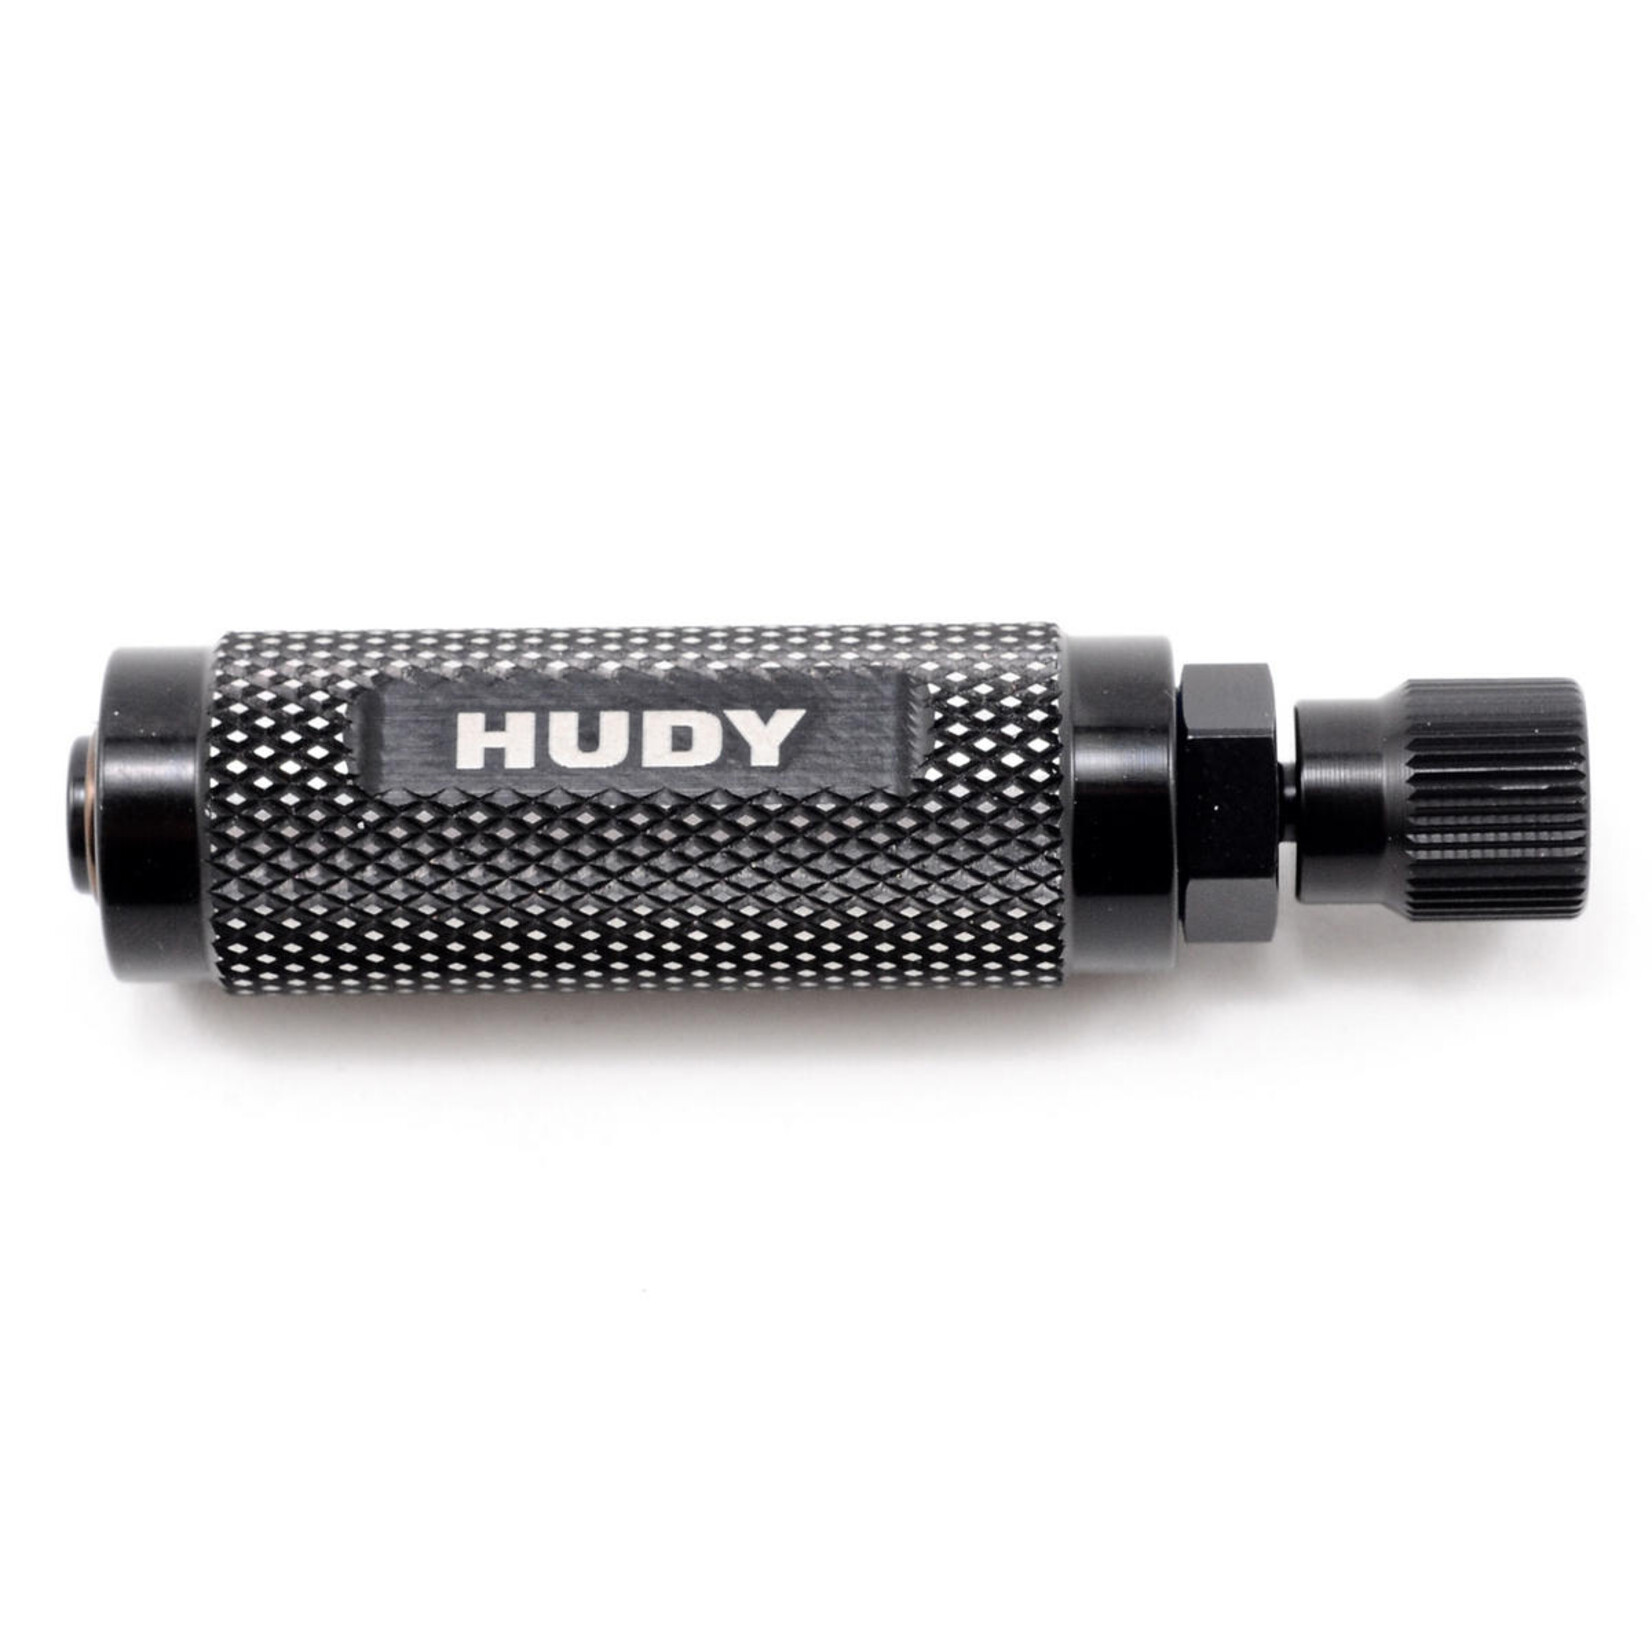 Hudy Hudy Wheel Balancer Adapter For 1/10 Touring Cars #105520